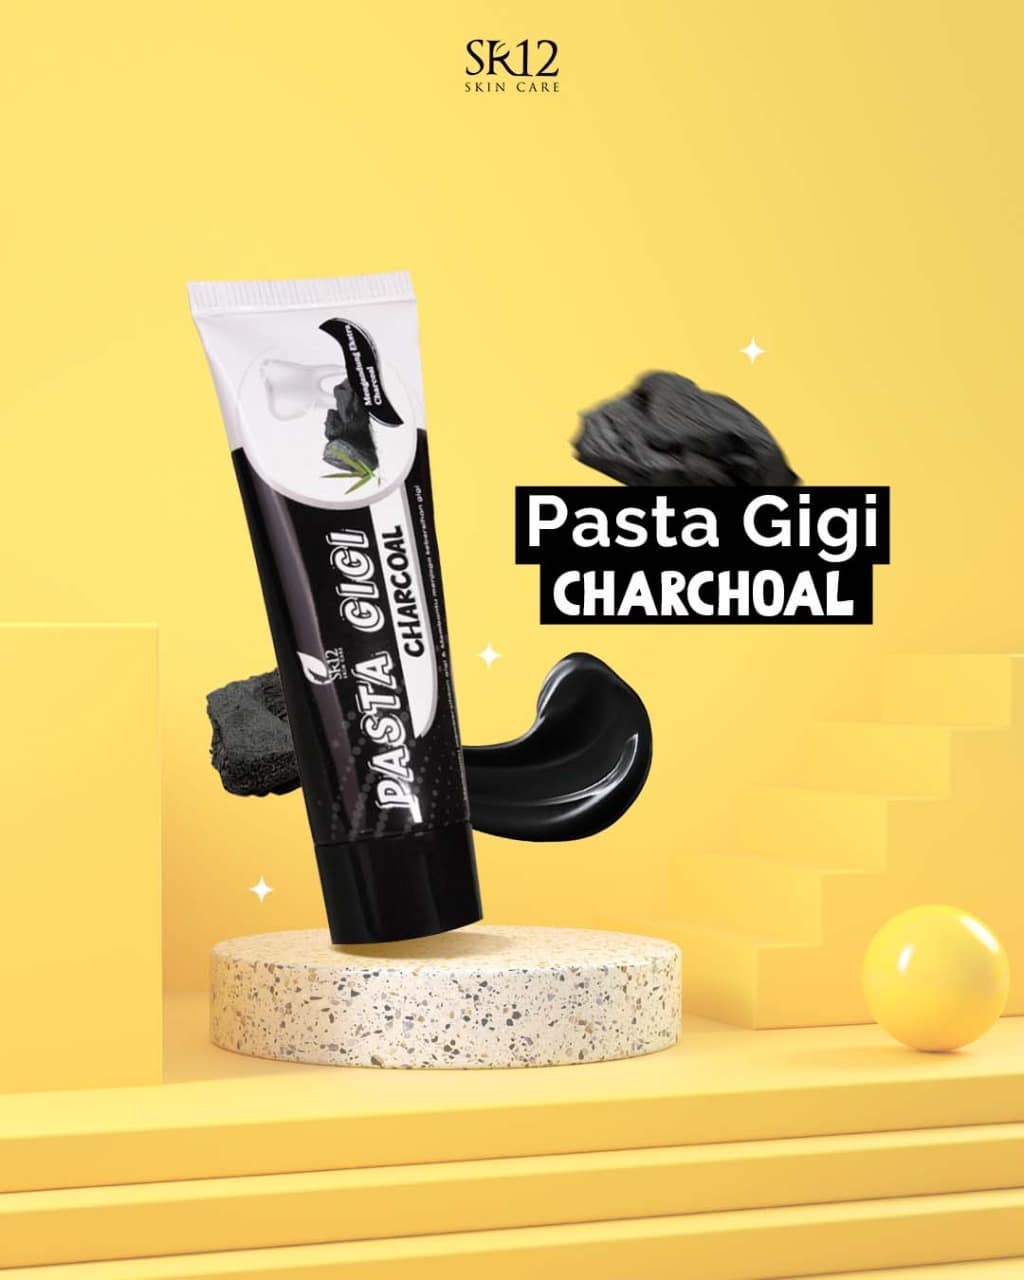 Pasta Gigi Charcoal SR12